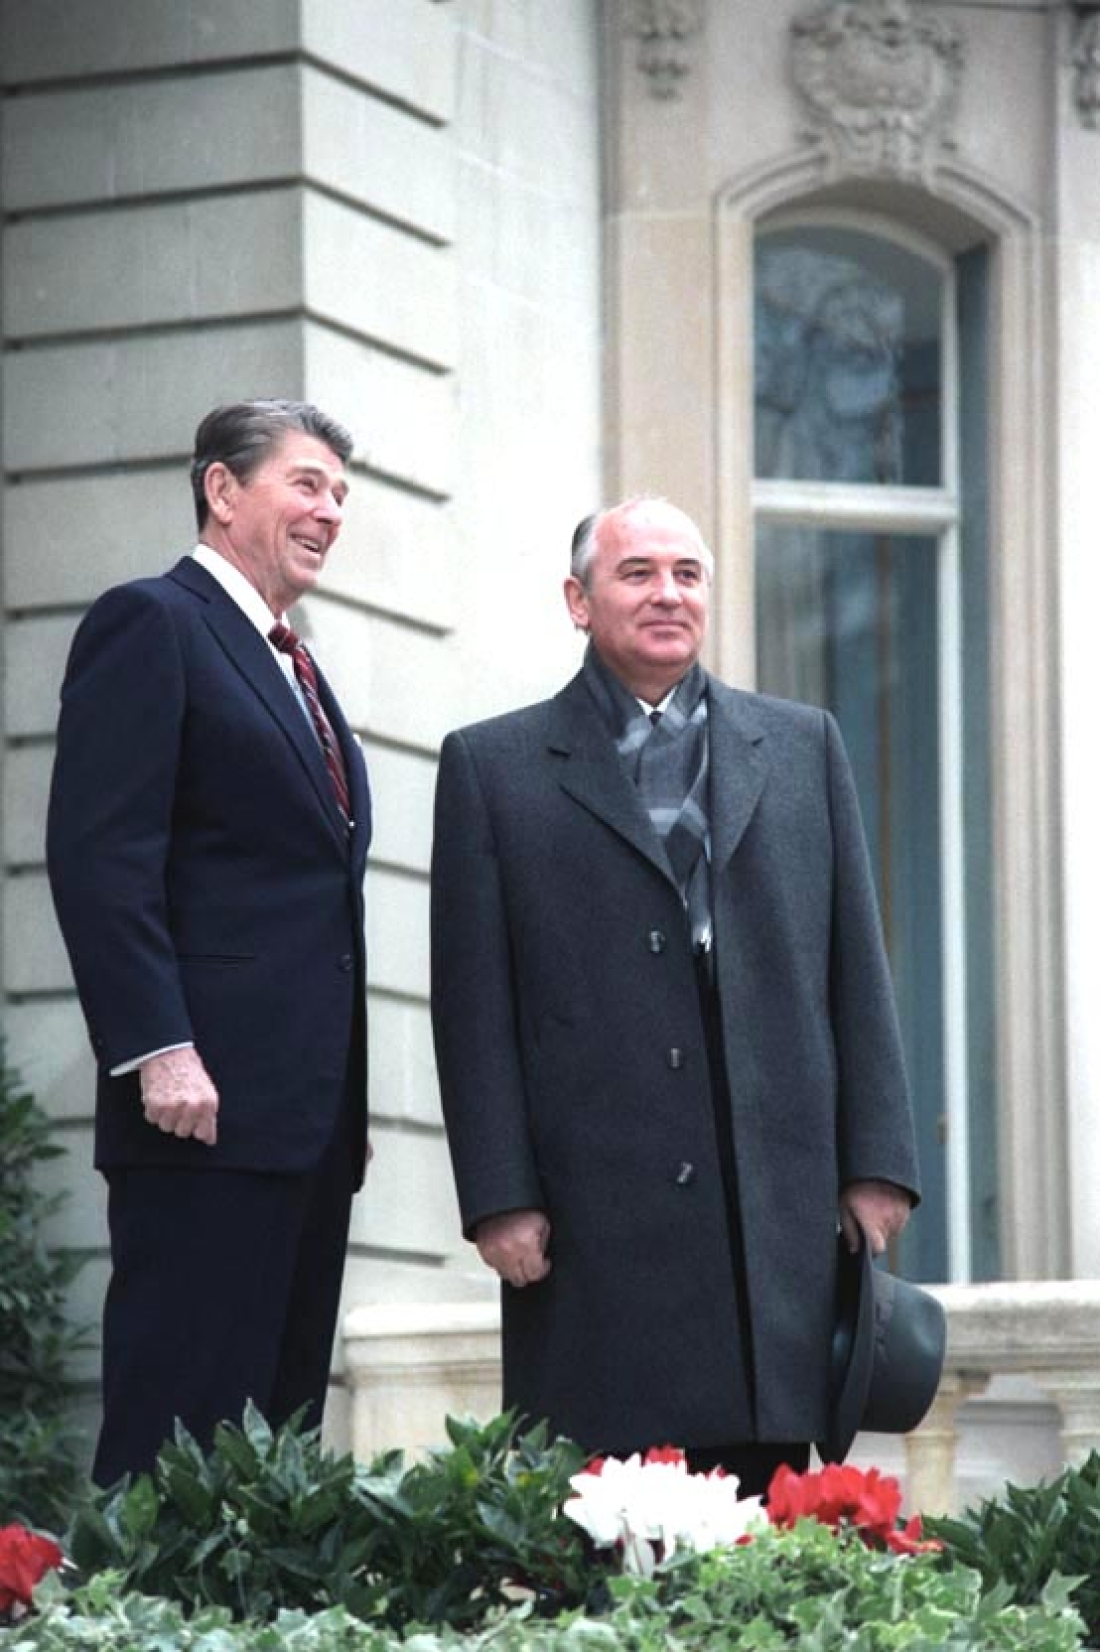 1985, Γενεύη, Ελβετία. Ο Μιχαήλ Γκορμπατσόφ συναντιέται με τον αμερικανό πρόεδρο Ρόναλντ Ρέιγκαν. Ο Γκορμπατσόφ είχε μόλις διαδεχεί τον εκλιπόντα Κονσταντίν Τσερνιένκο στη θέση του γενικού΄γραμματέα της ΕΣΣΔ.